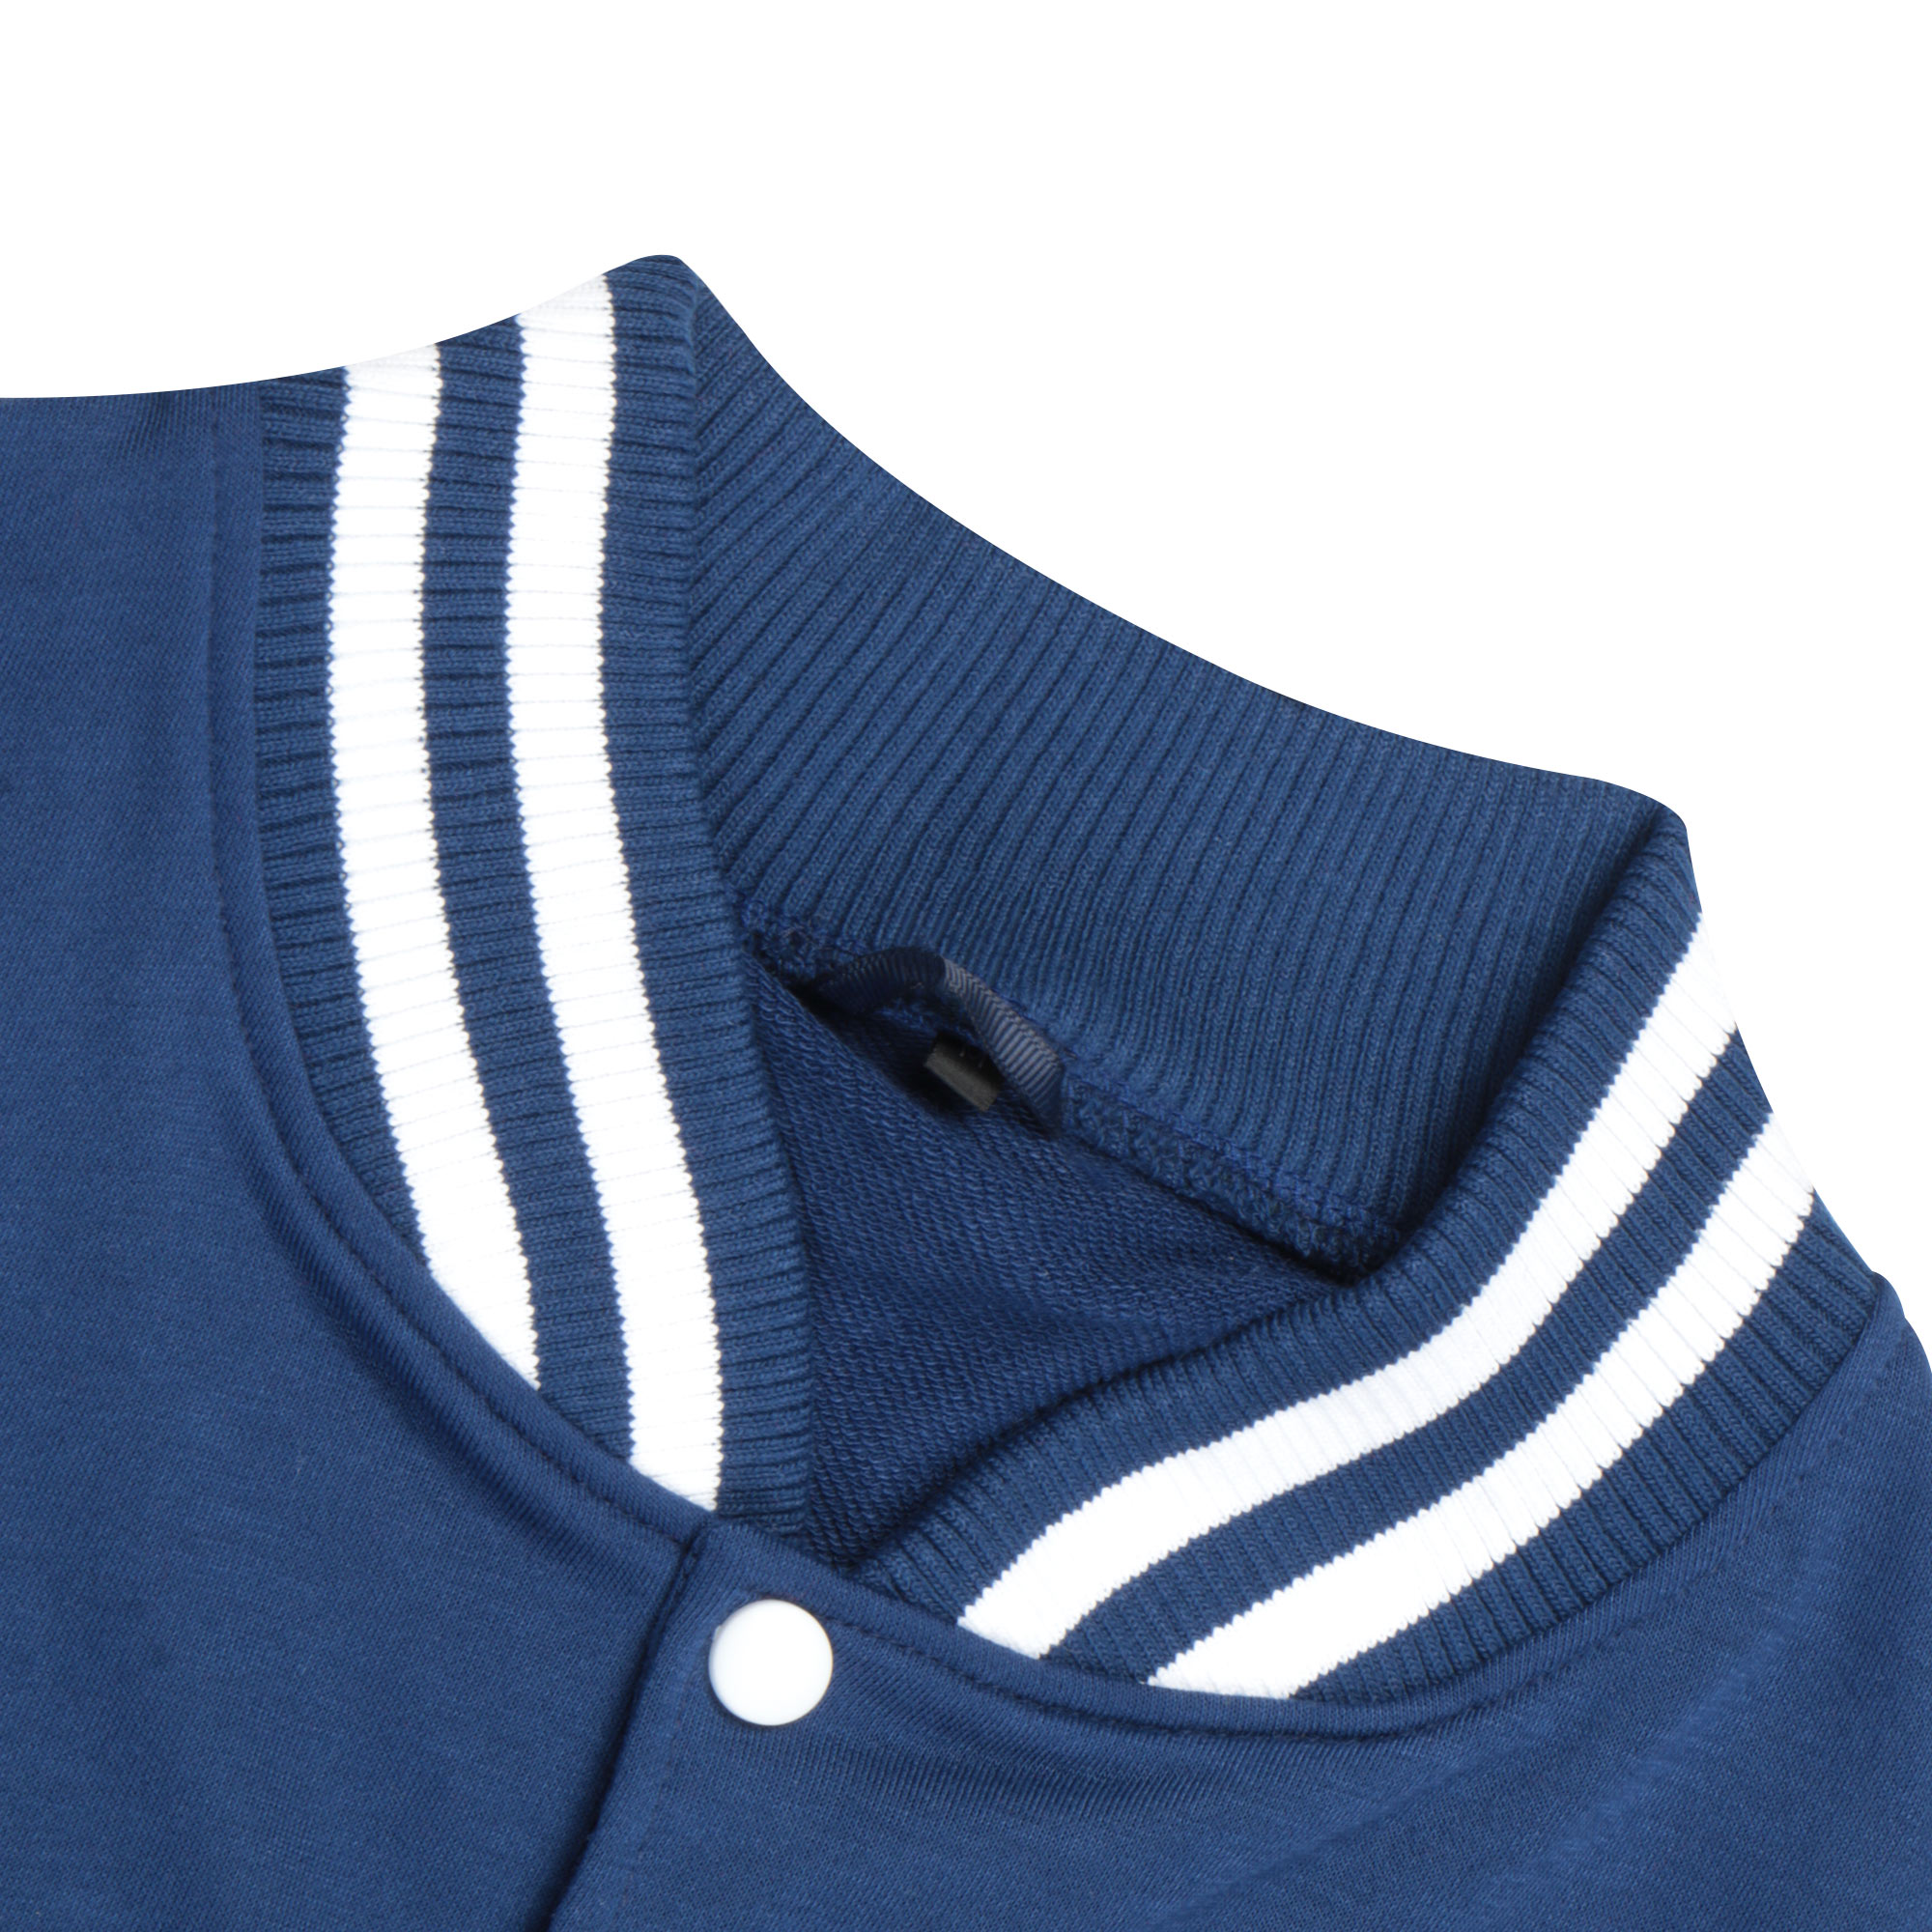 Бомбер Garment тёмно-синий/белый XXL хлопок, цвет темно-синий, размер XXL - фото 2